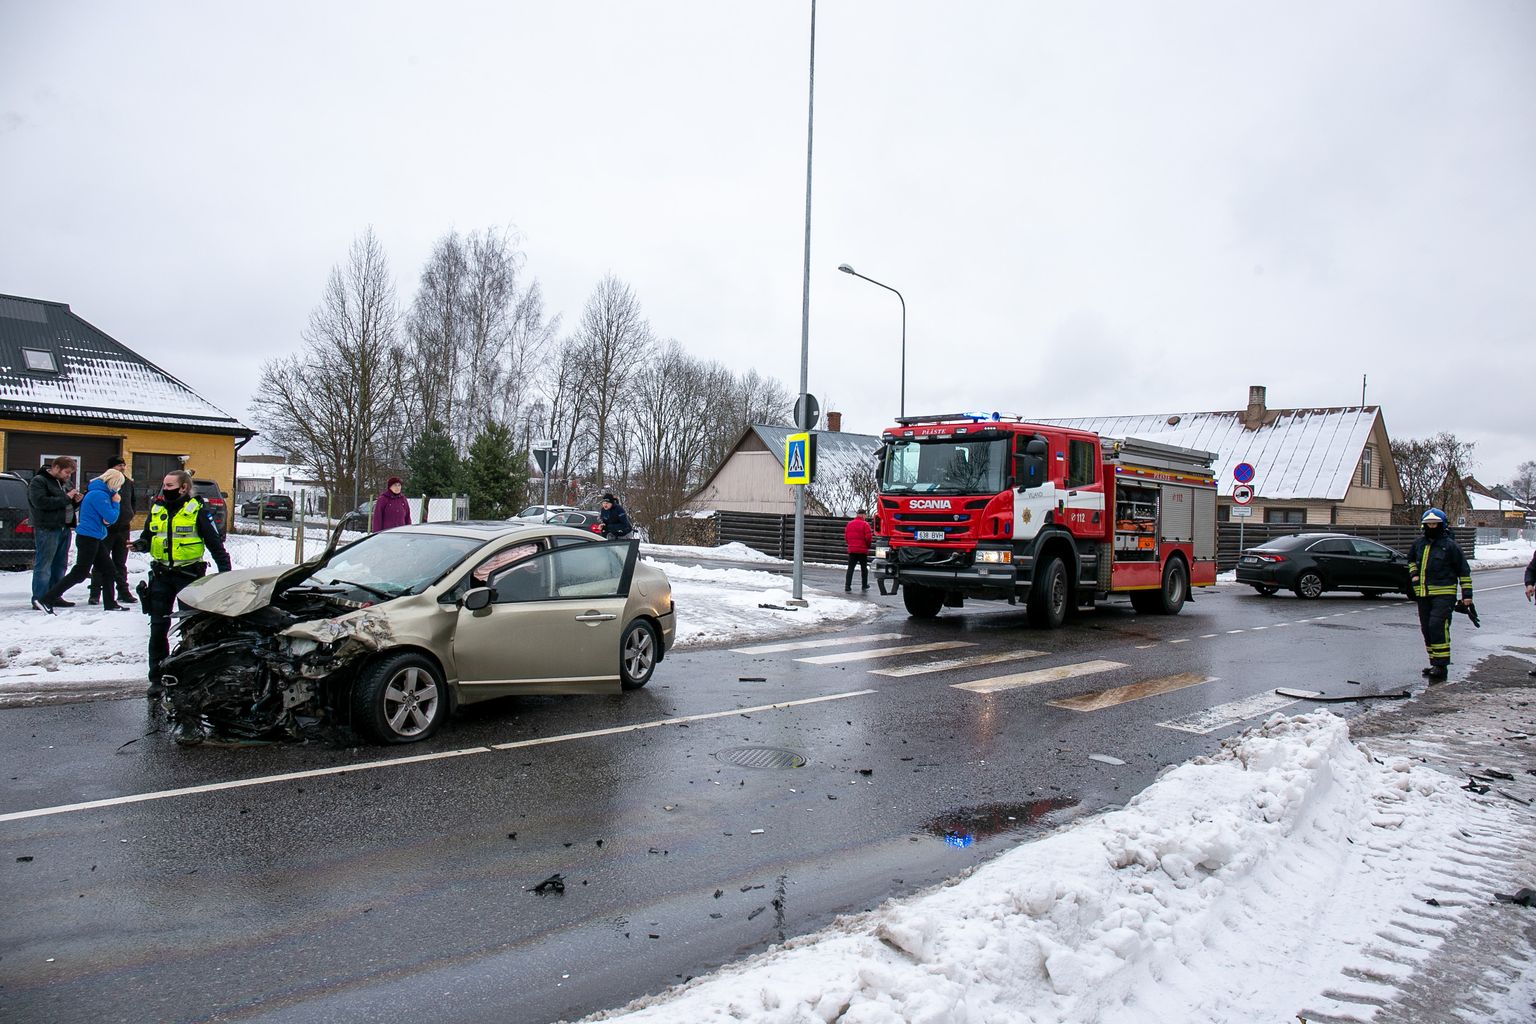 Sõiduauto Honda sai kannatada ka läinud kuul Viljandis toimunud õnnetuses. Foto on illustratiivne.